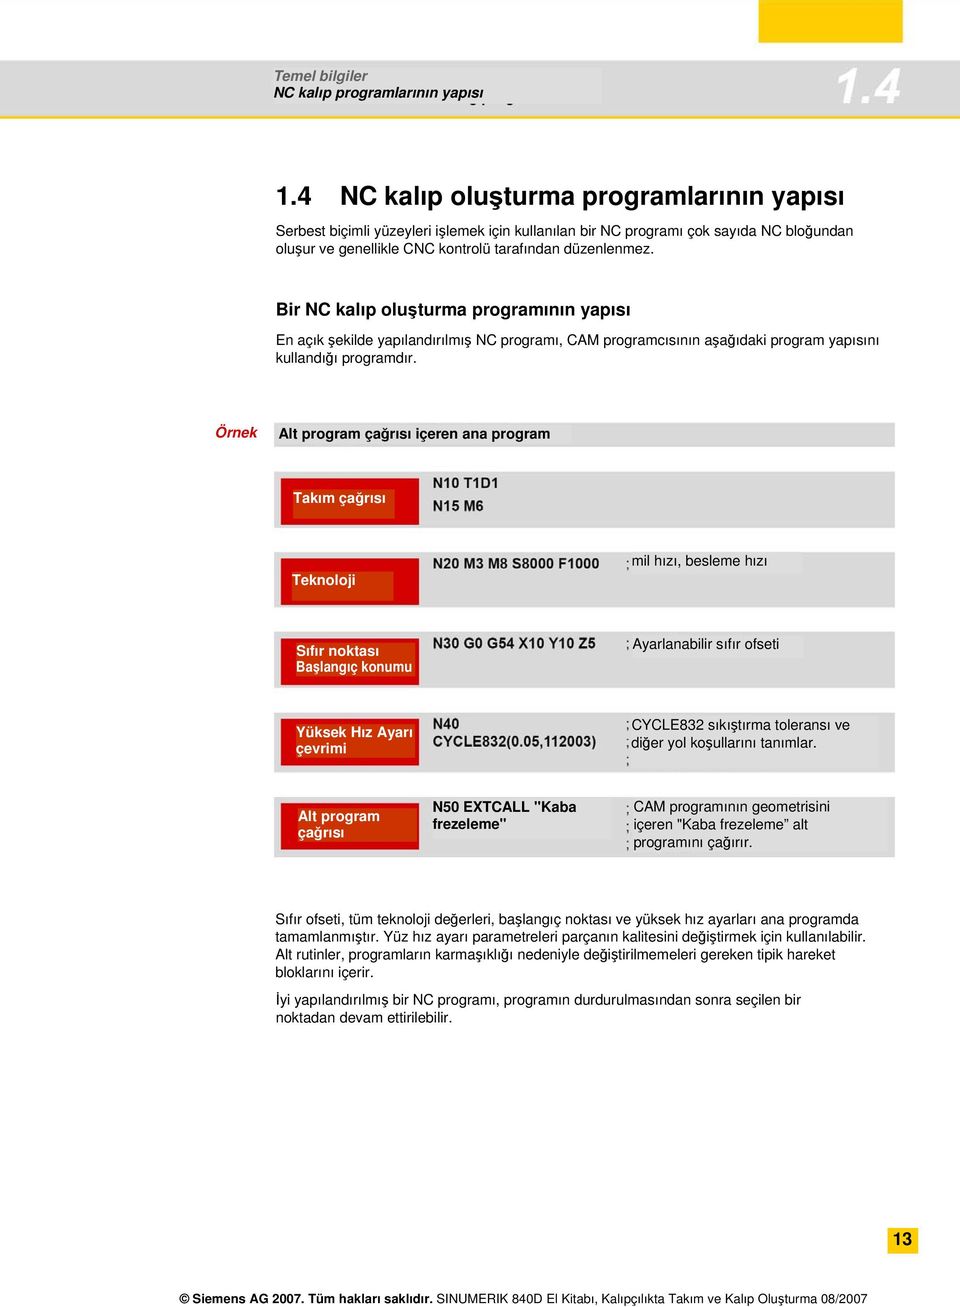 Bir NC kalıp oluşturma programının yapısı En açık şekilde yapılandırılmış NC programı, CAM programcısının aşağıdaki program yapısını kullandığı programdır.